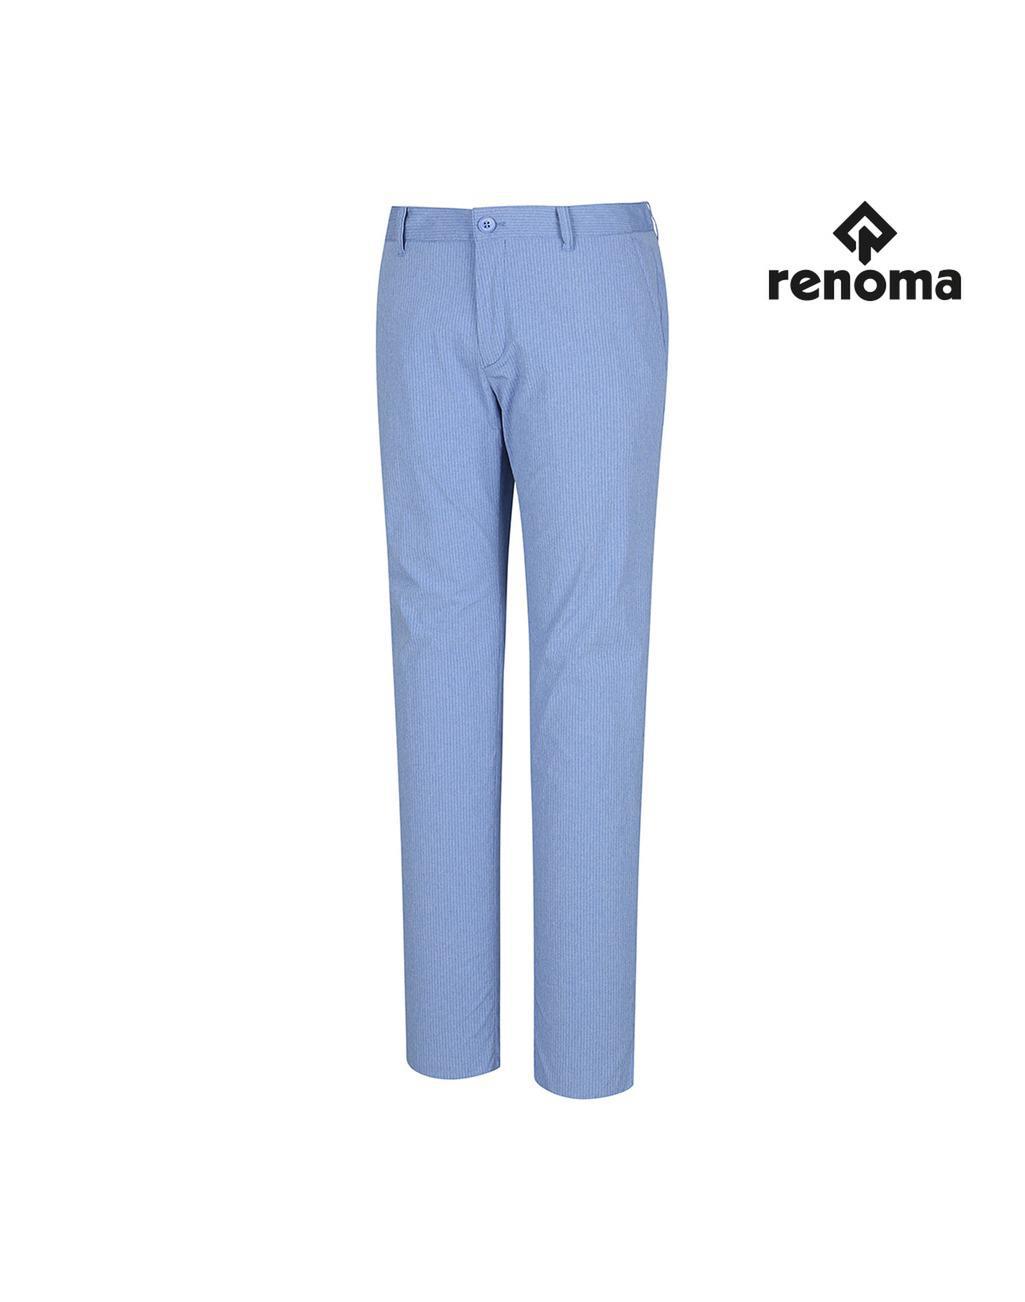 QUẦN GOLF NAM RENOMA RMPTI-2508 L/BLUE (920)